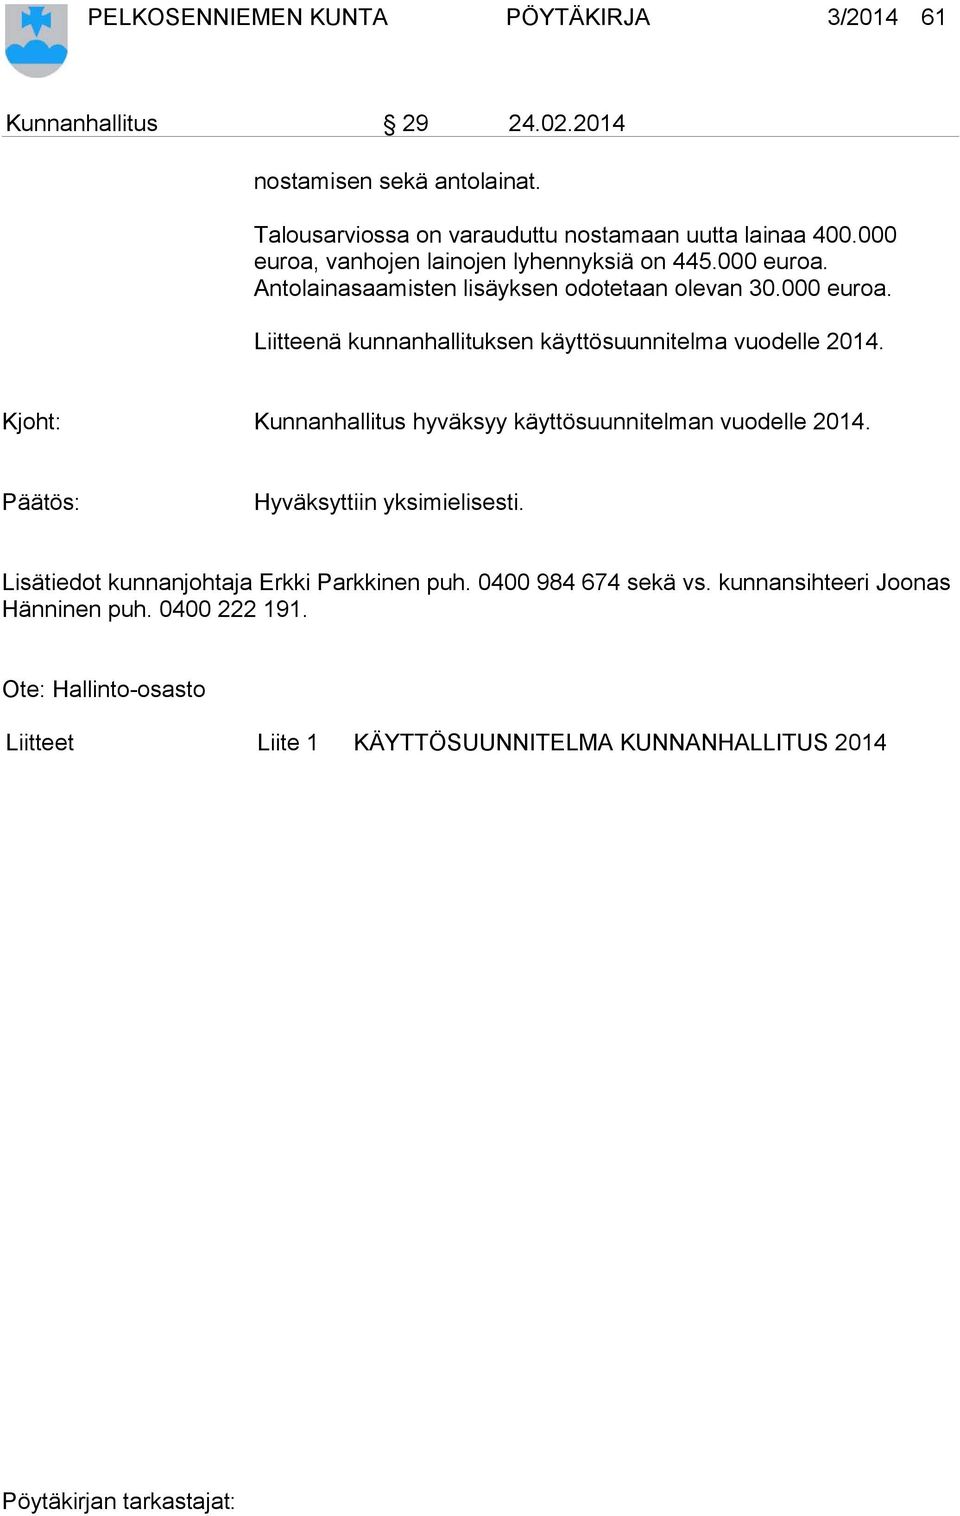 Kjoht: Kunnanhallitus hyväksyy käyttösuunnitelman vuodelle 2014. Hyväksyttiin yksimielisesti. Lisätiedot kunnanjohtaja Erkki Parkkinen puh.